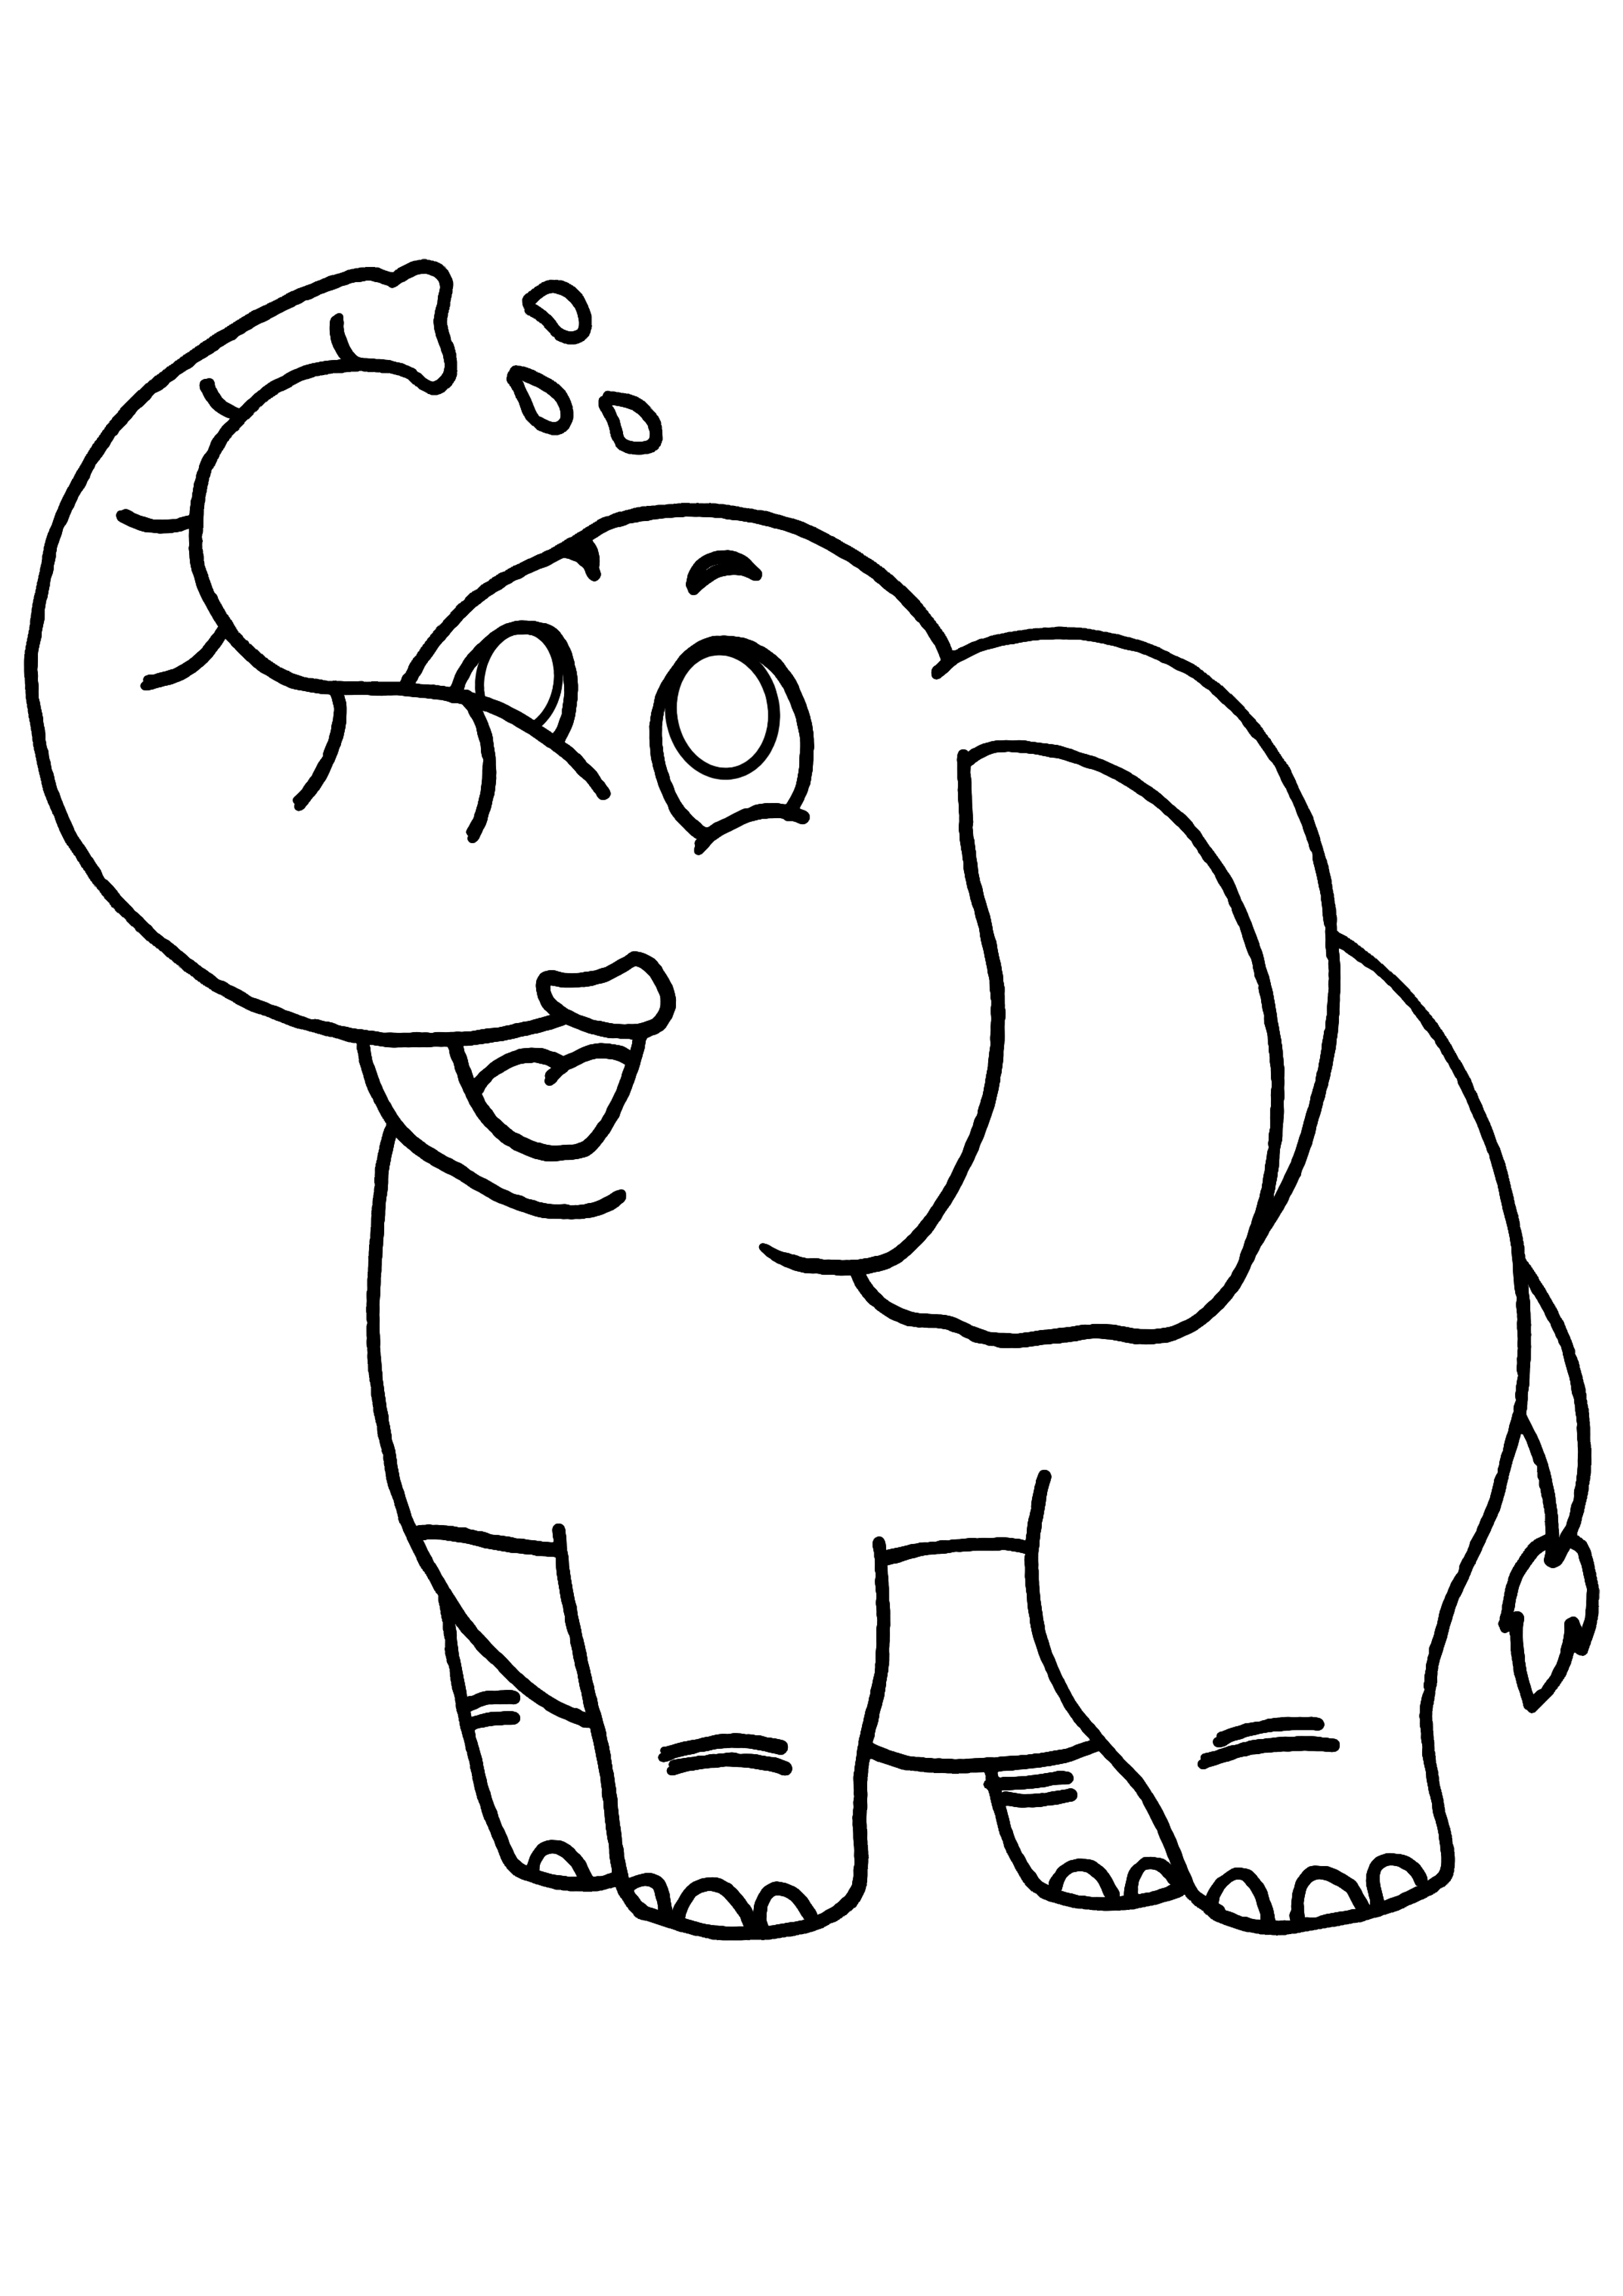 Раскраска Африканский слон с семьёй распечатать или скачать